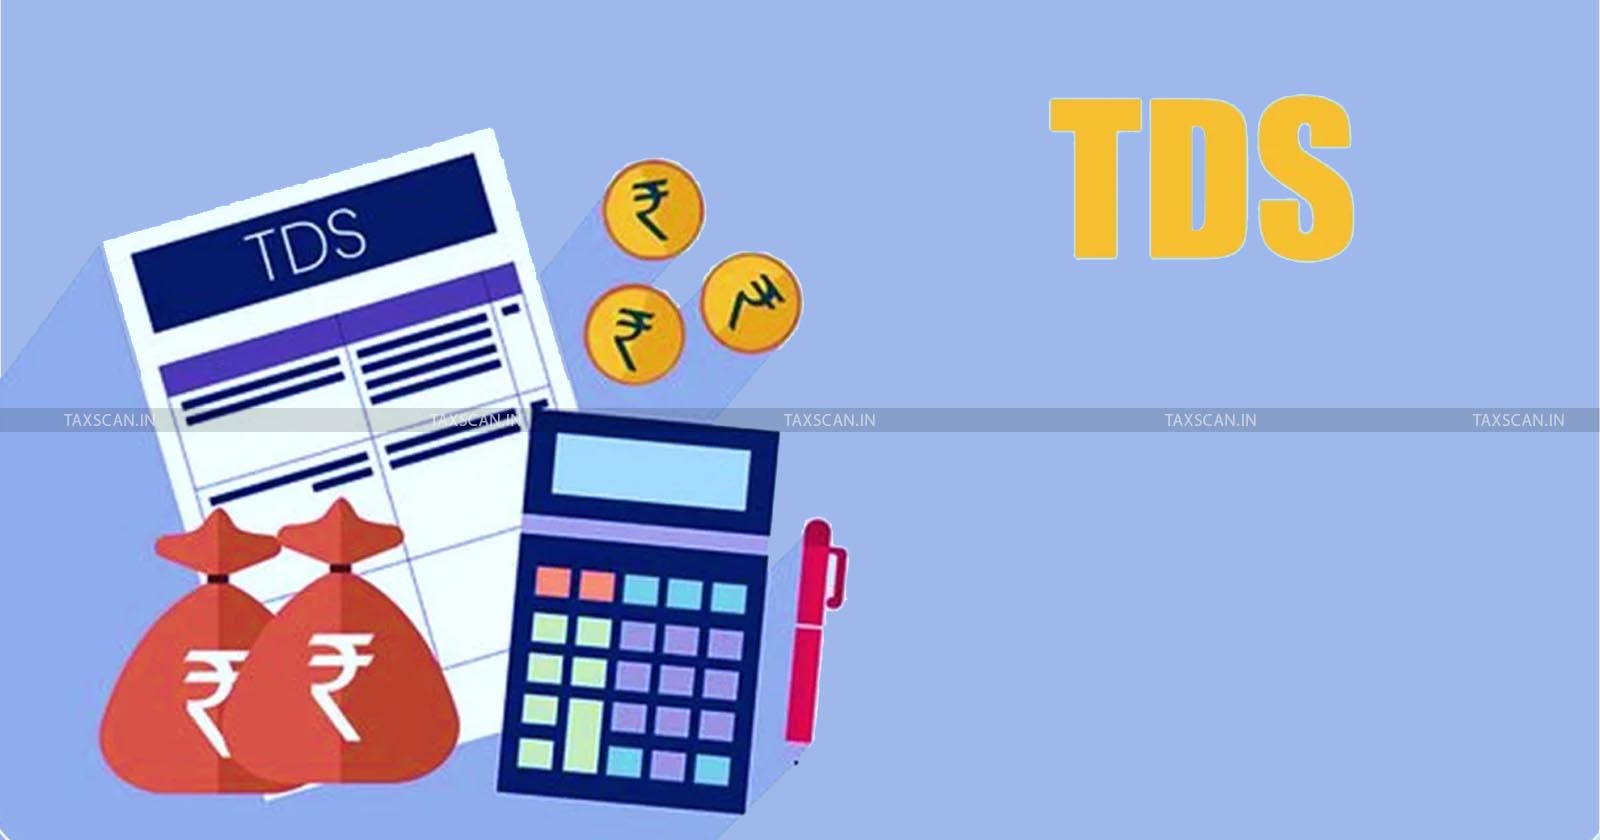 Employee - duty - TDS - revenue - Delhi HC - taxscan